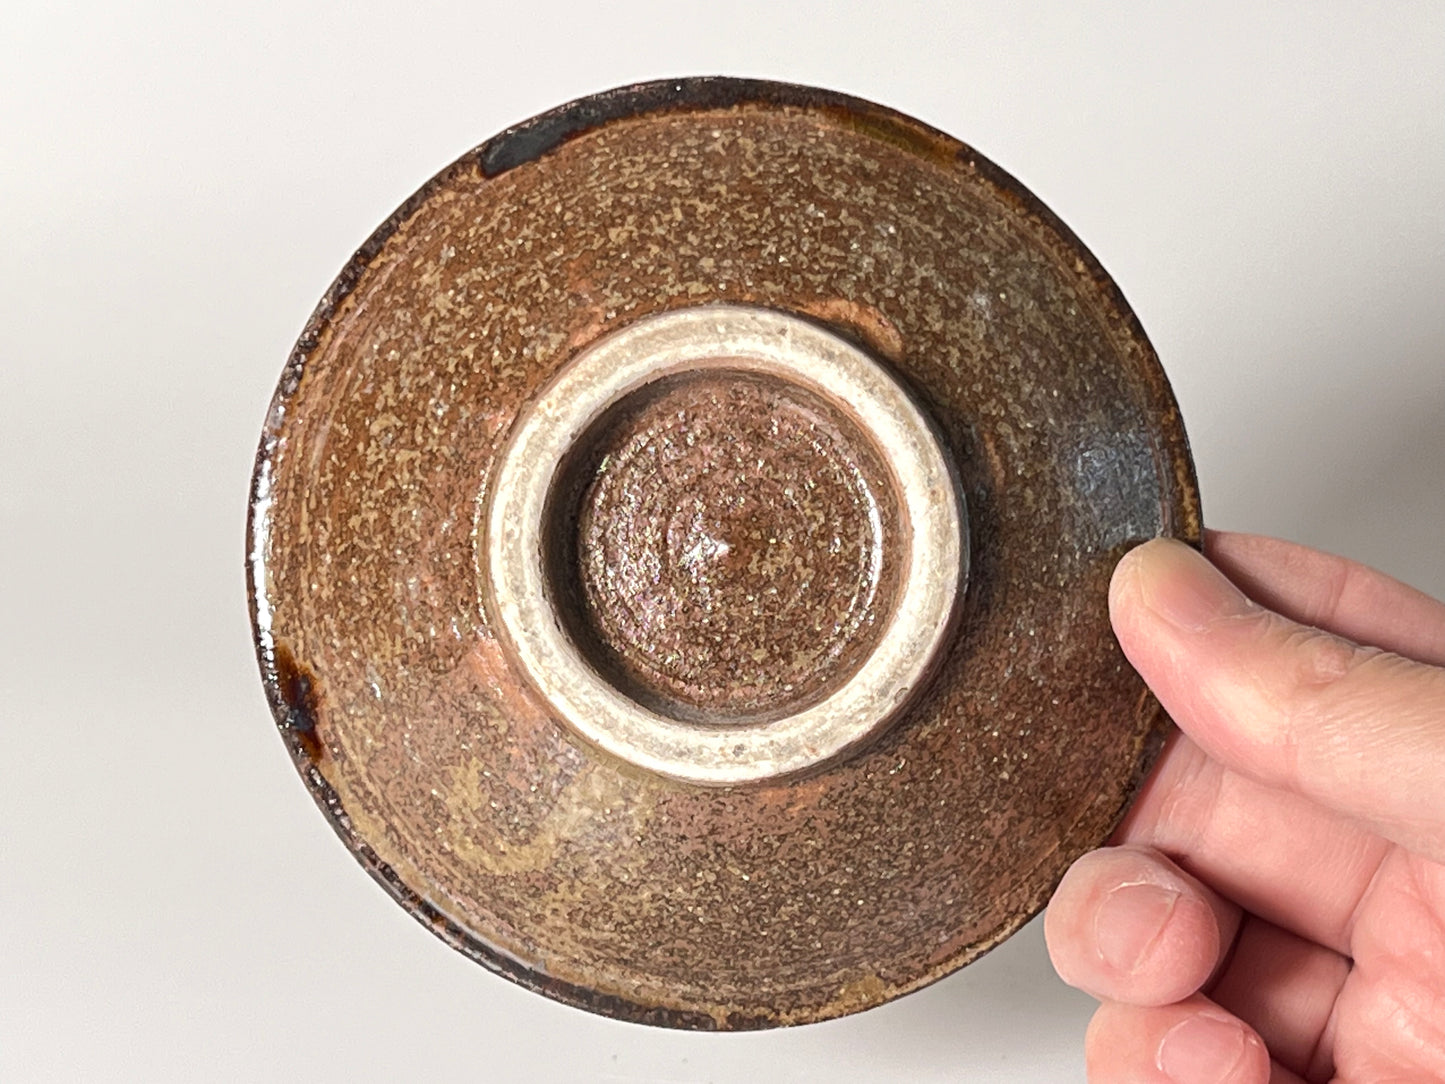 Eiichi Koubou - 3.5寸盘子 - 两种颜色